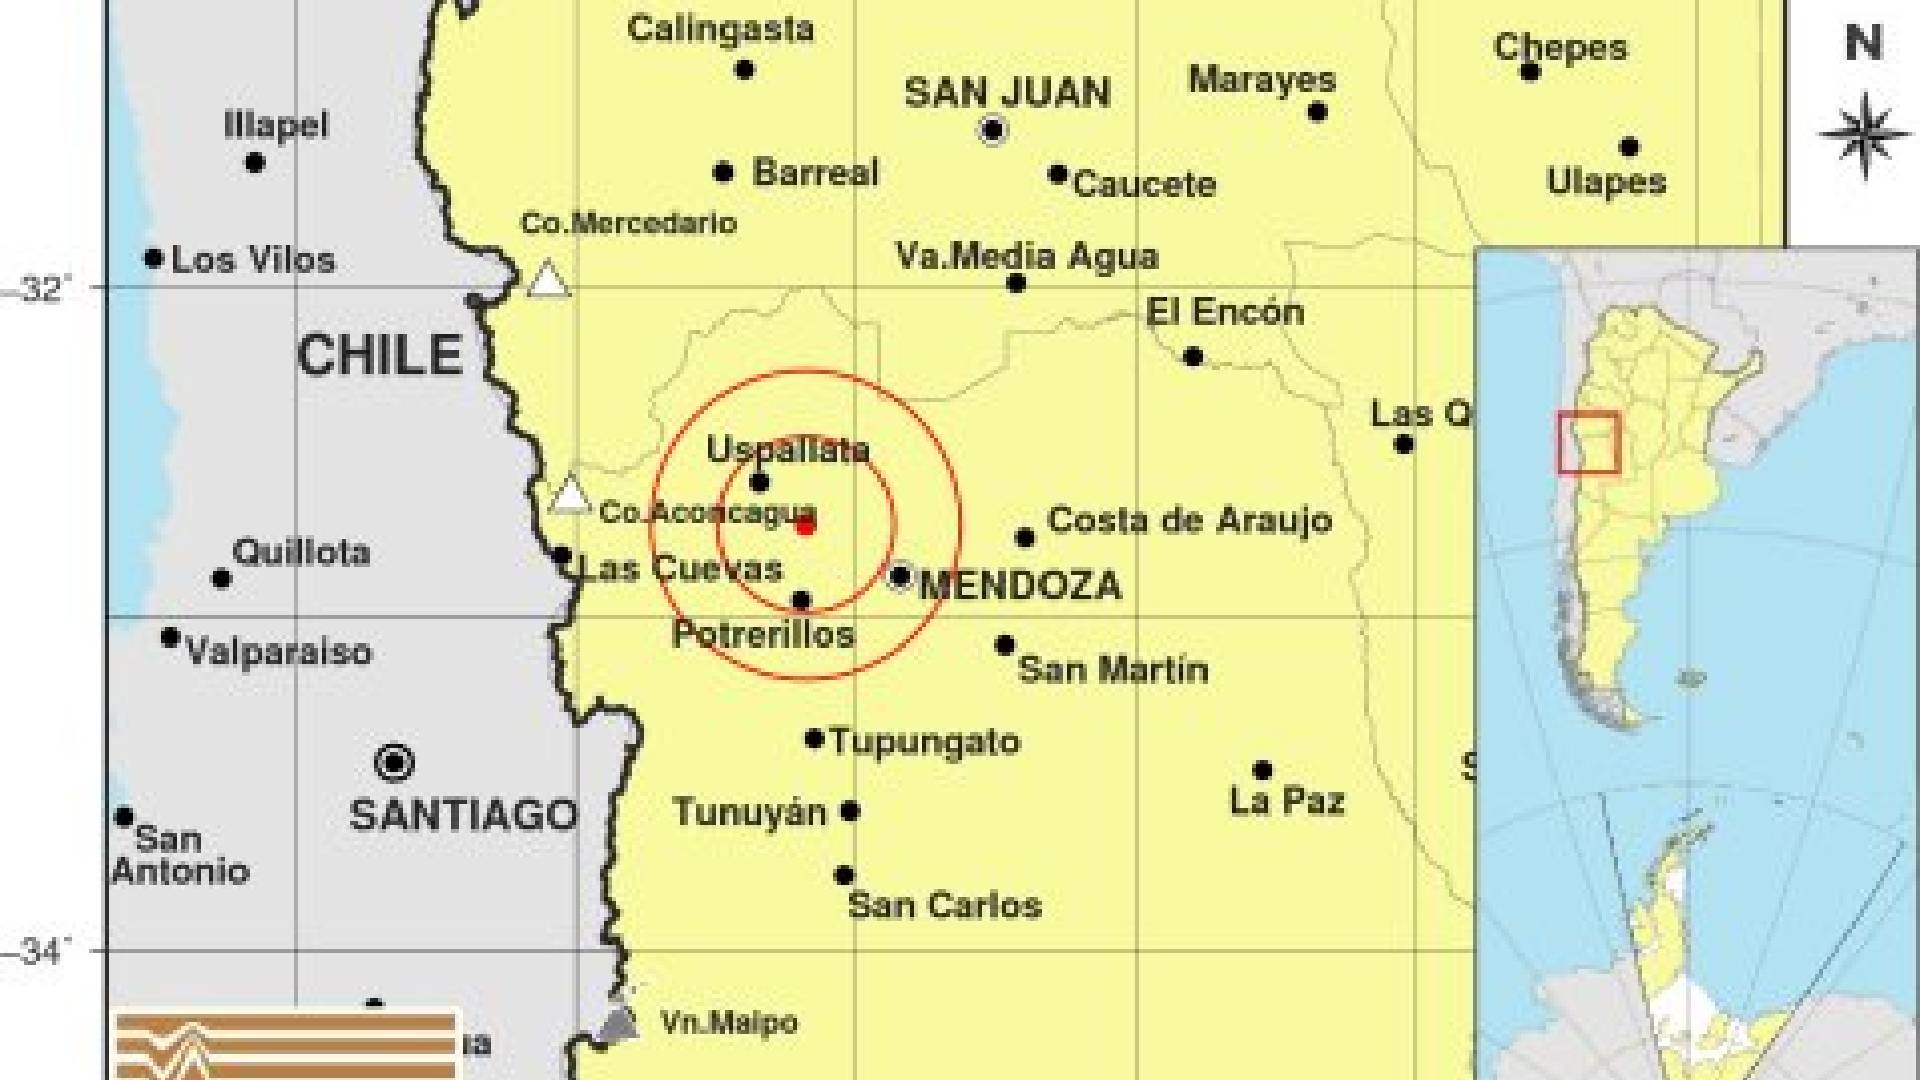 Fuerte temblor en Mendoza: se registró un sismo de 4.7 que se sintió con intensidad en la provincia  